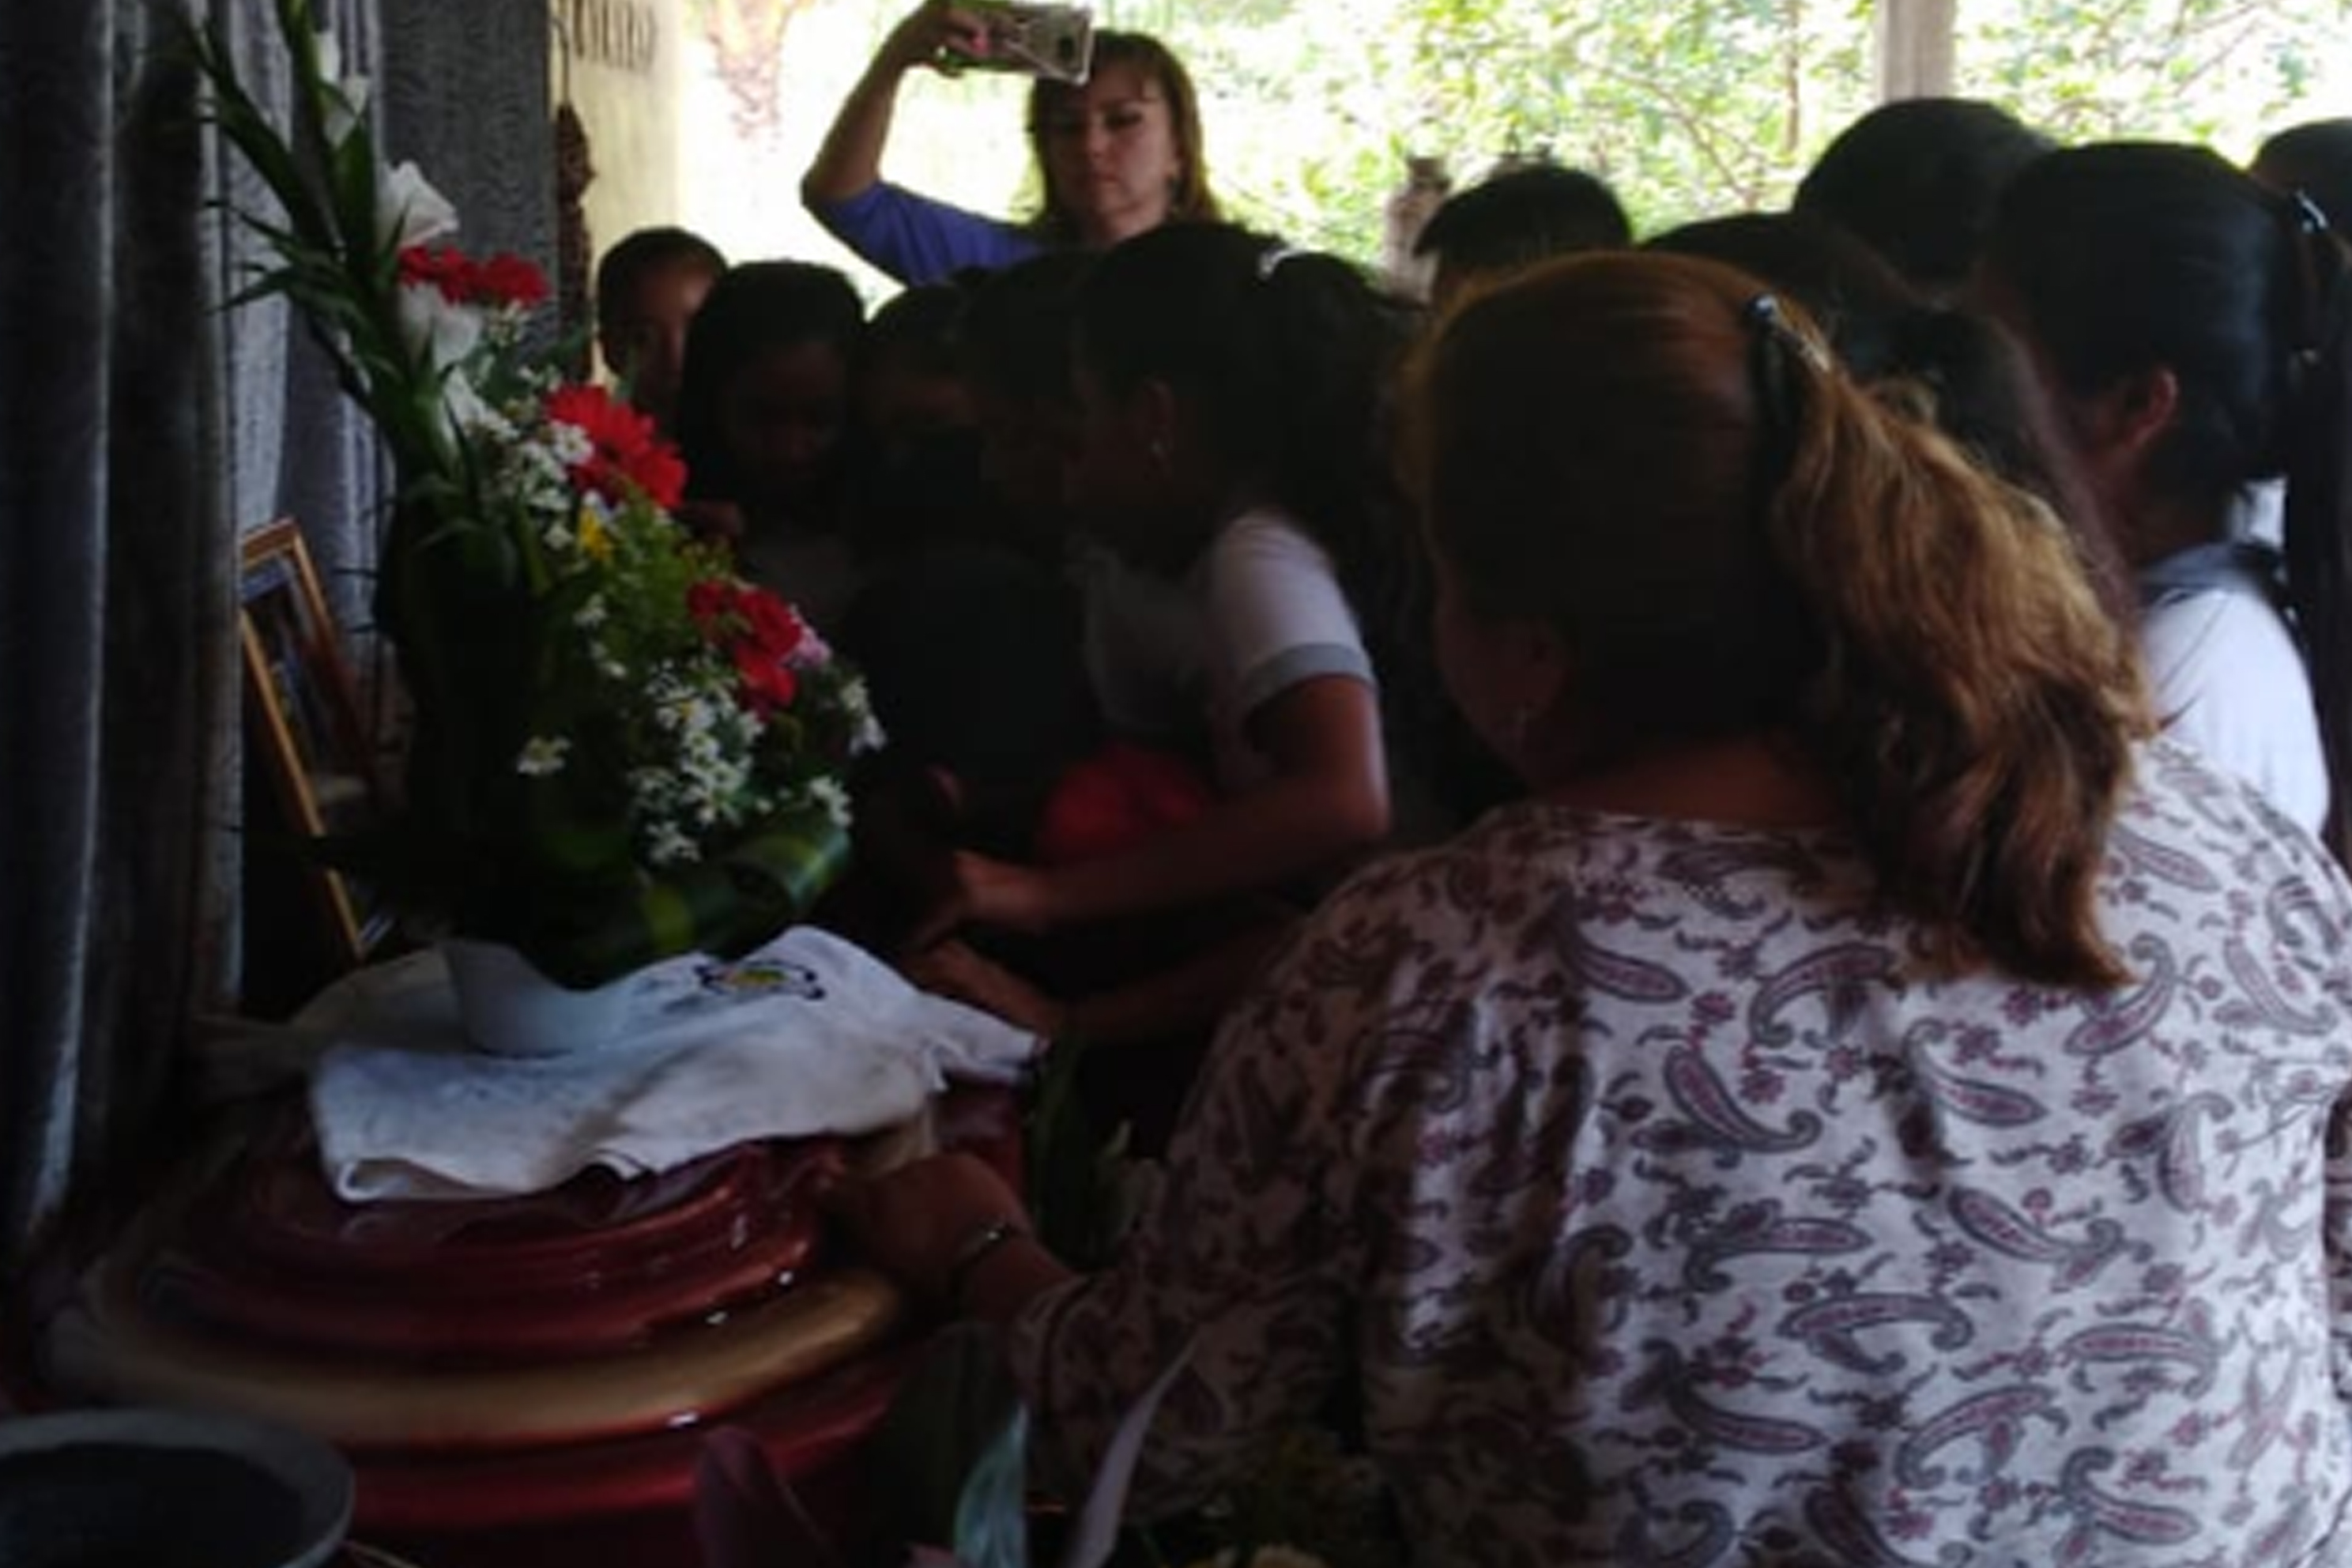 Familiares y vecinos de la comunidad Nicá, Malacatán, San Marcos, velan cuerpos de dos migrantes que murieron en accidente en Chiapas. (Foto Prensa Libre: Whitmer Barrera).